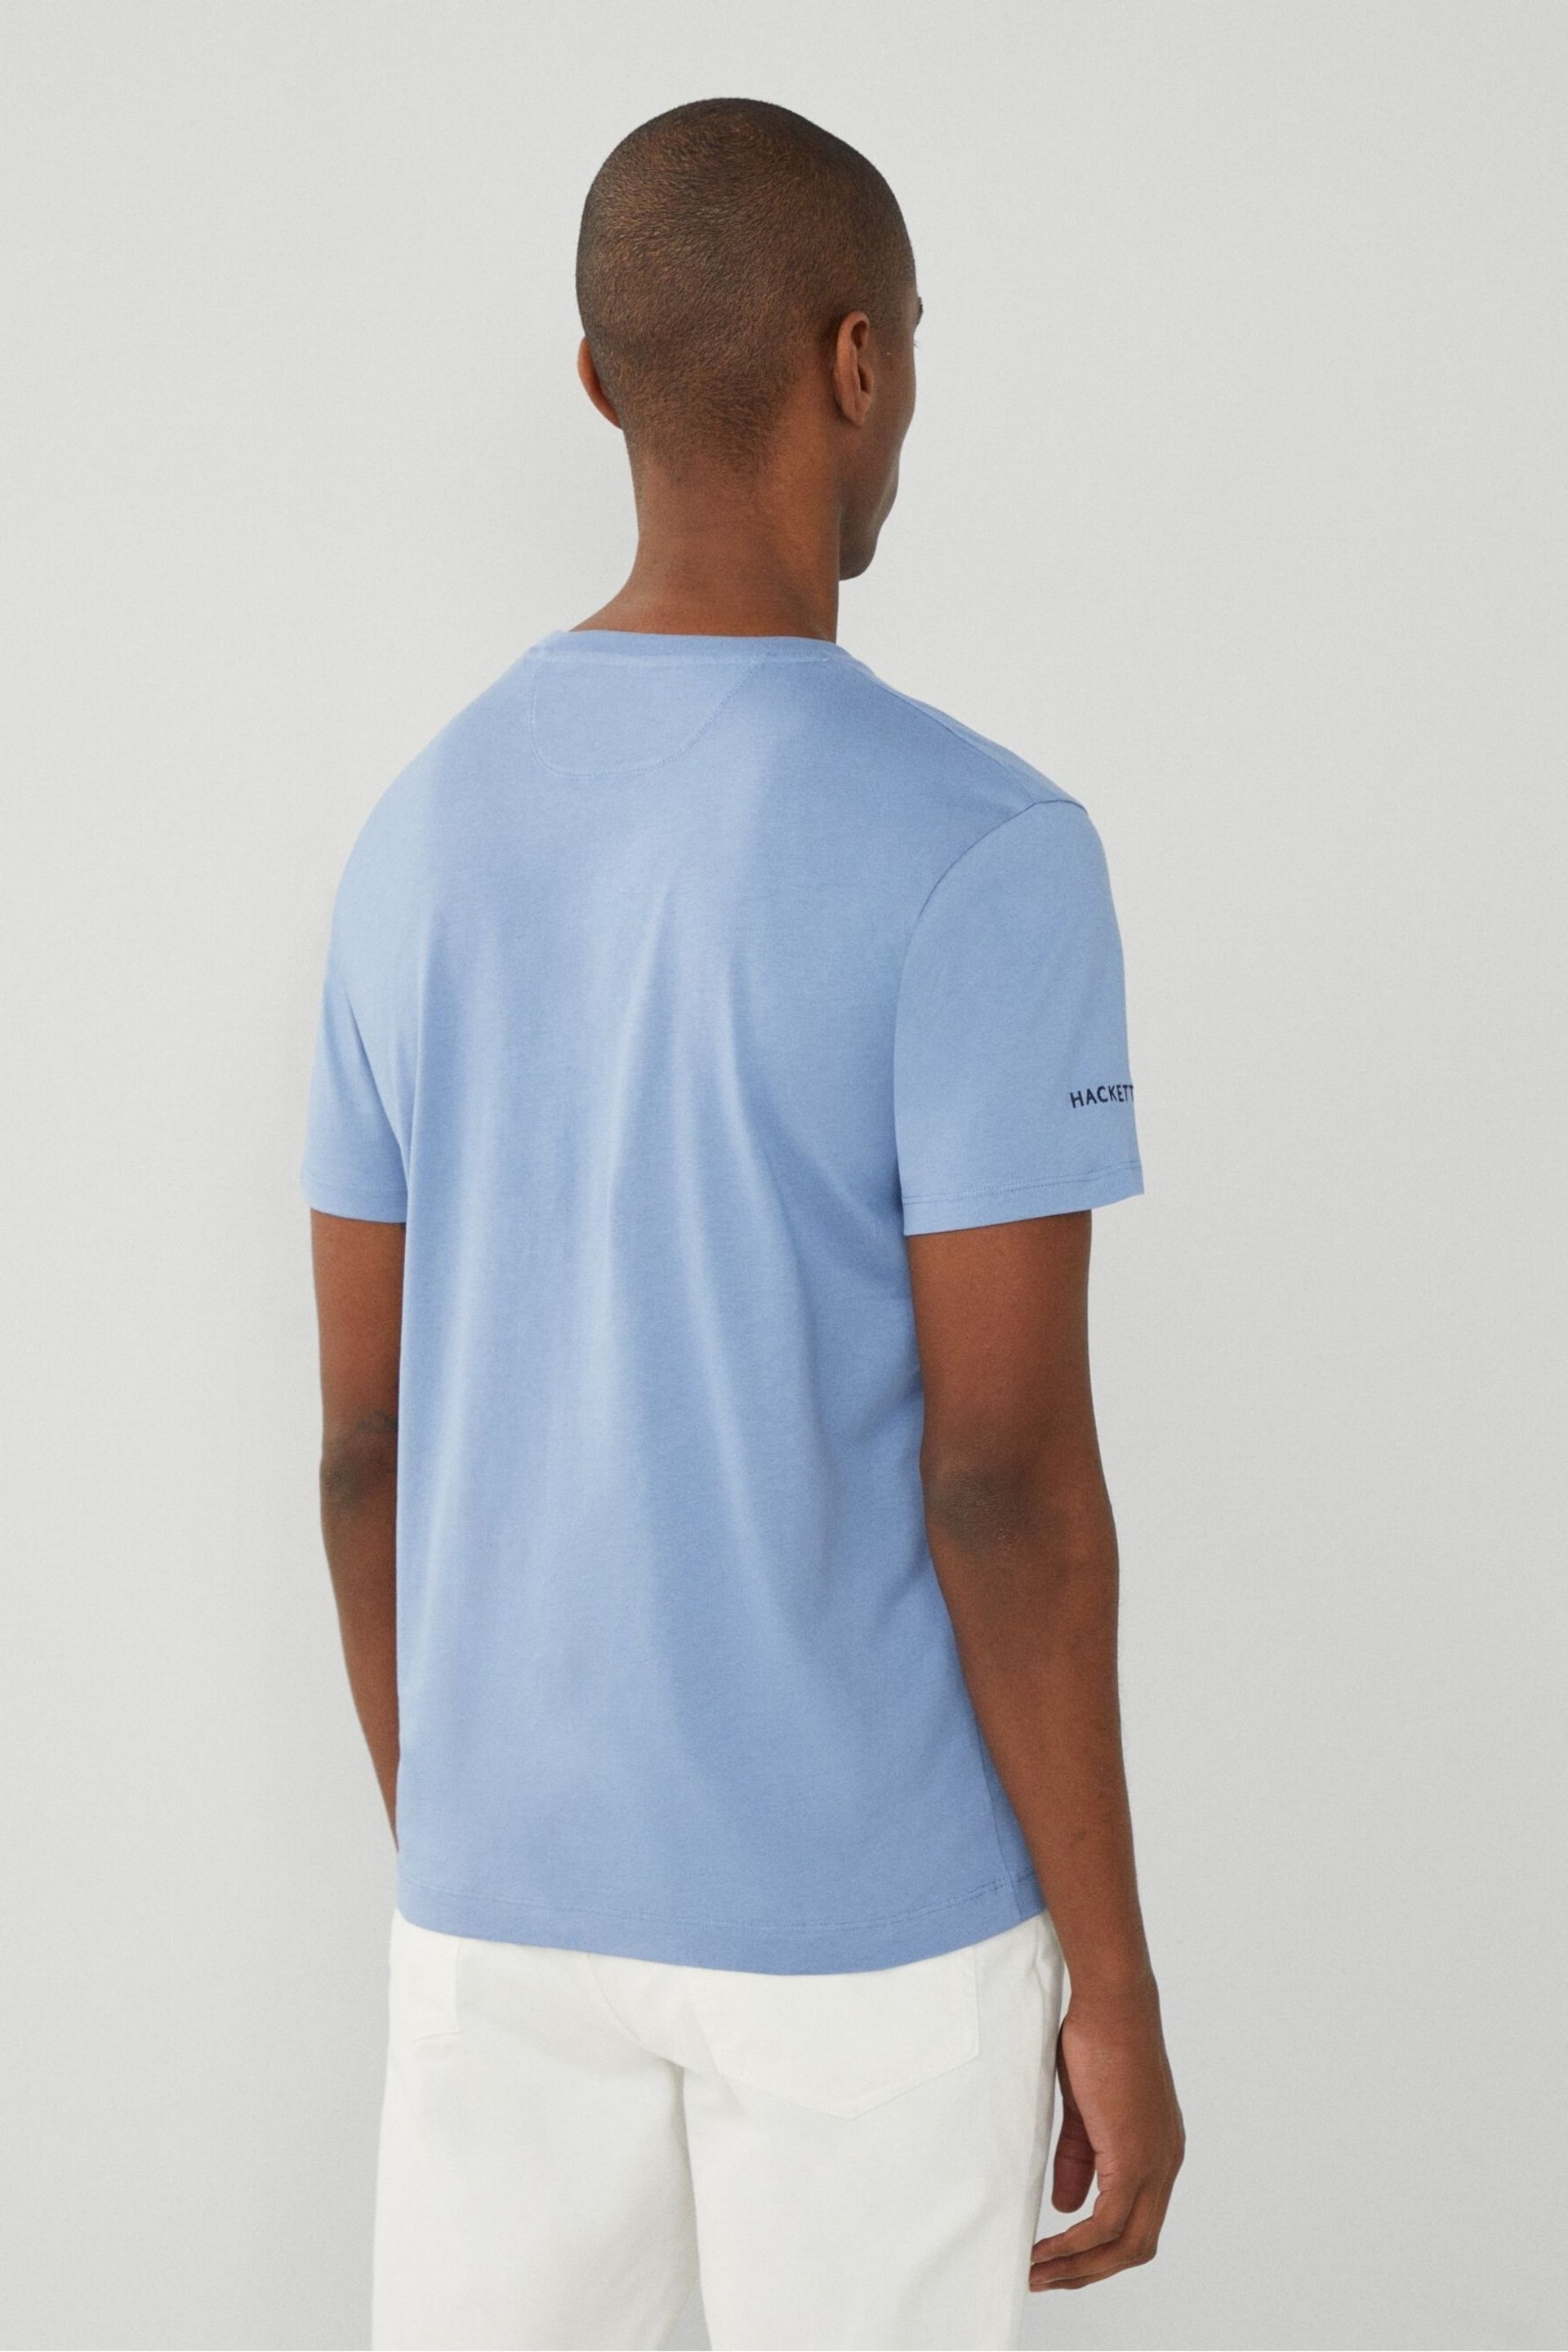 Hackett London Men Blue Short Sleeve T-Shirt - Image 3 of 4